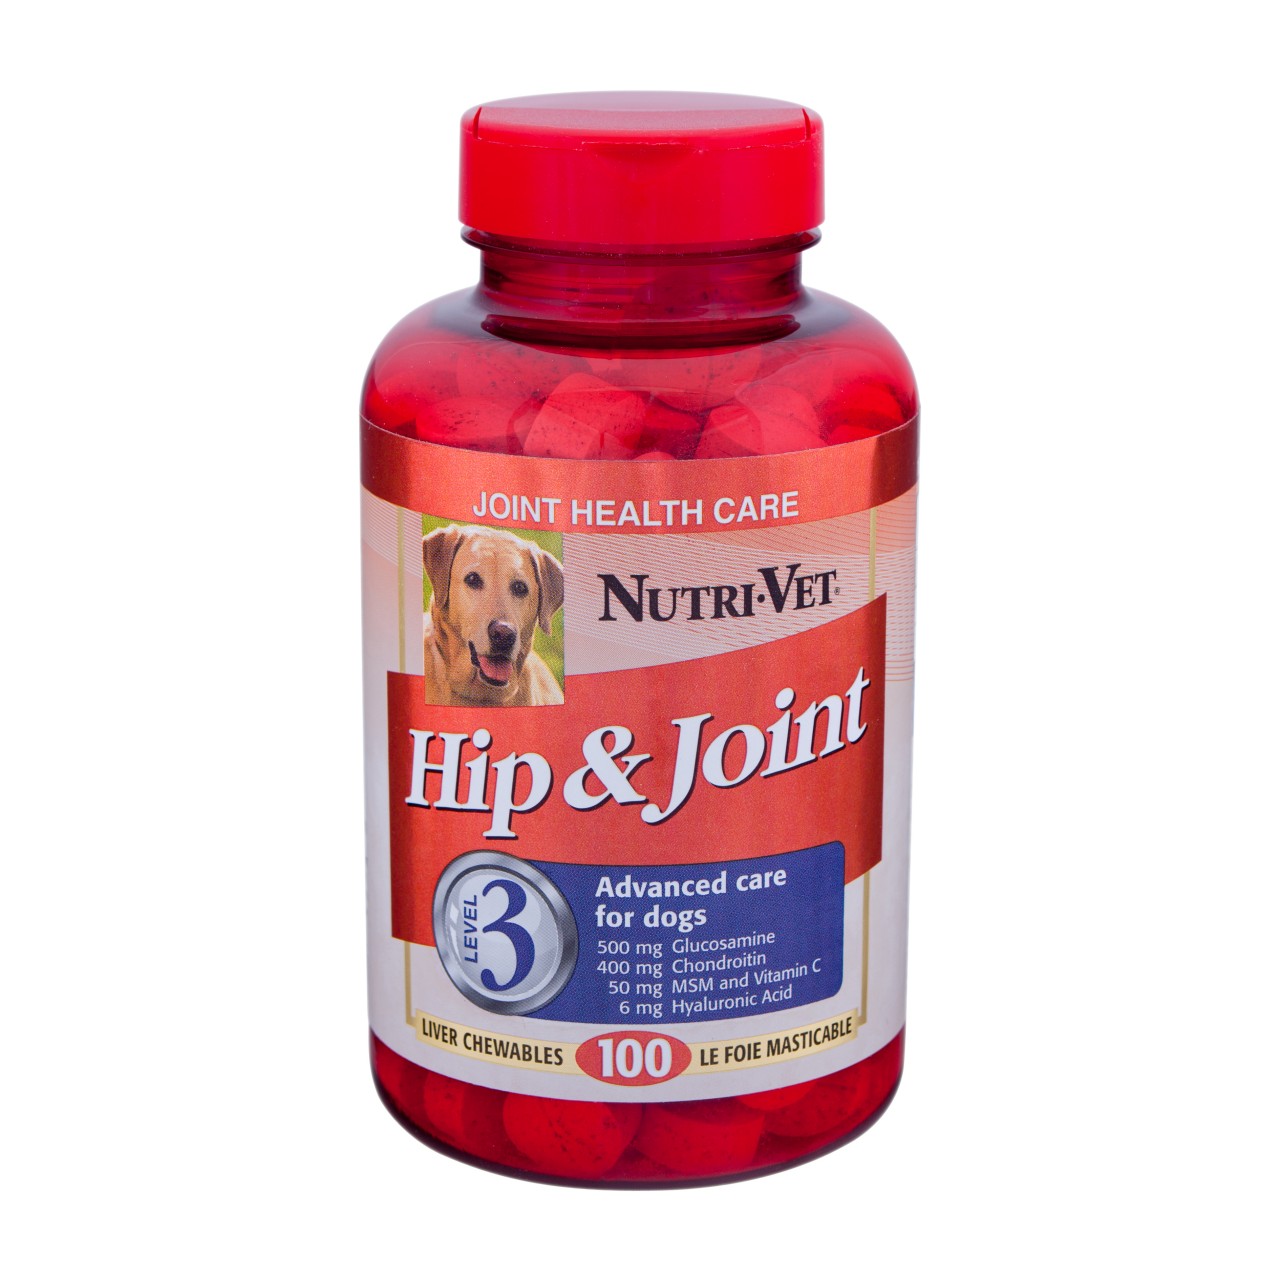 Nutri-Vet Level 3 advanced Care Hip & Joint